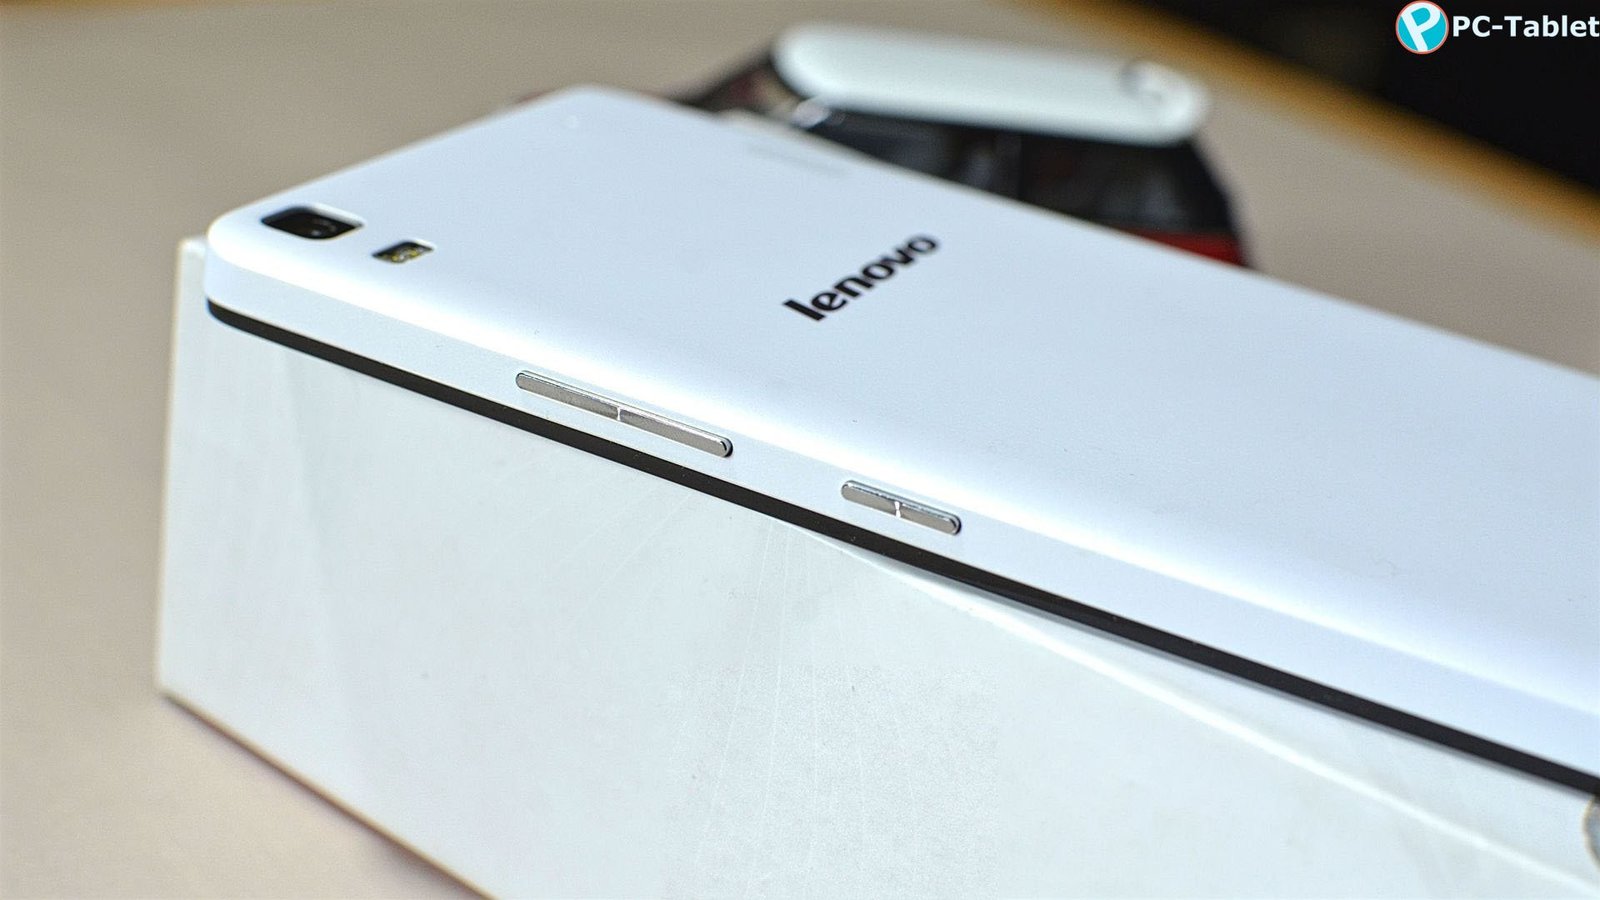 Lenovo K3 Note Review